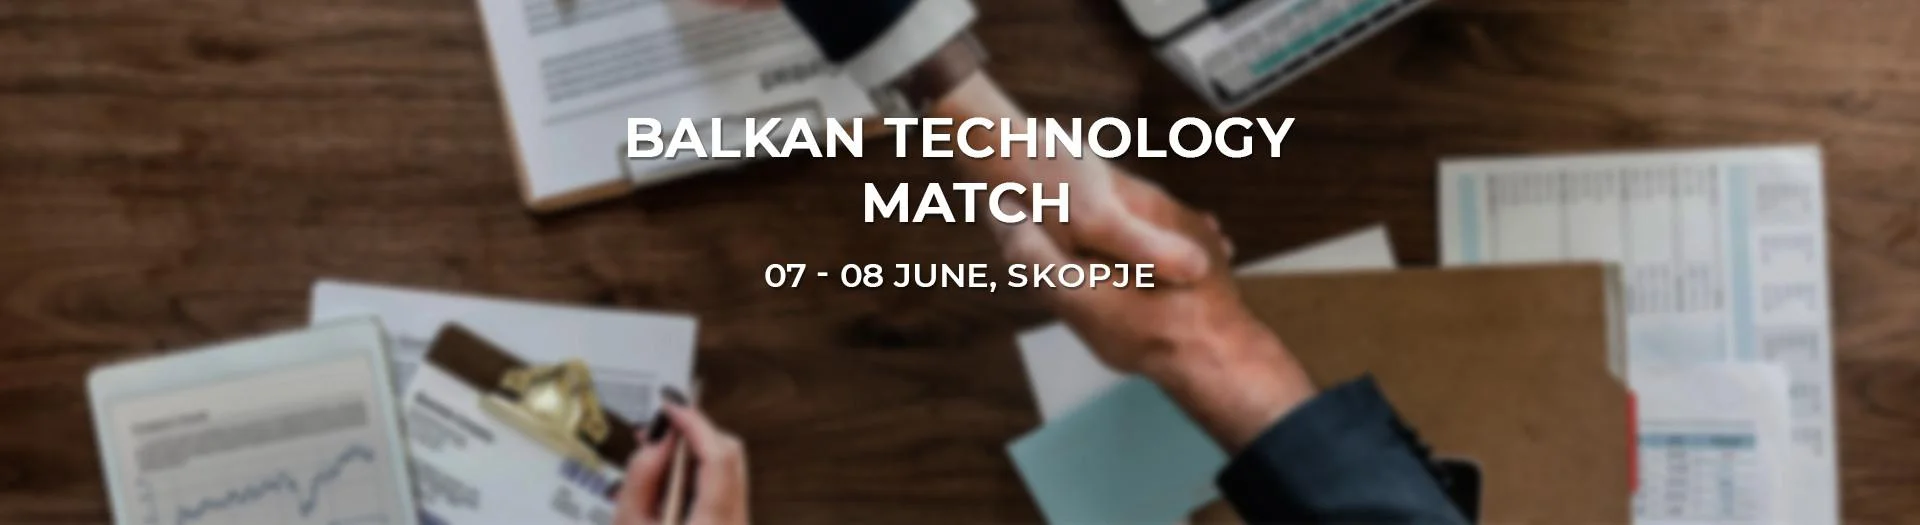 HOLISUN at Balkan Technology Match 2018